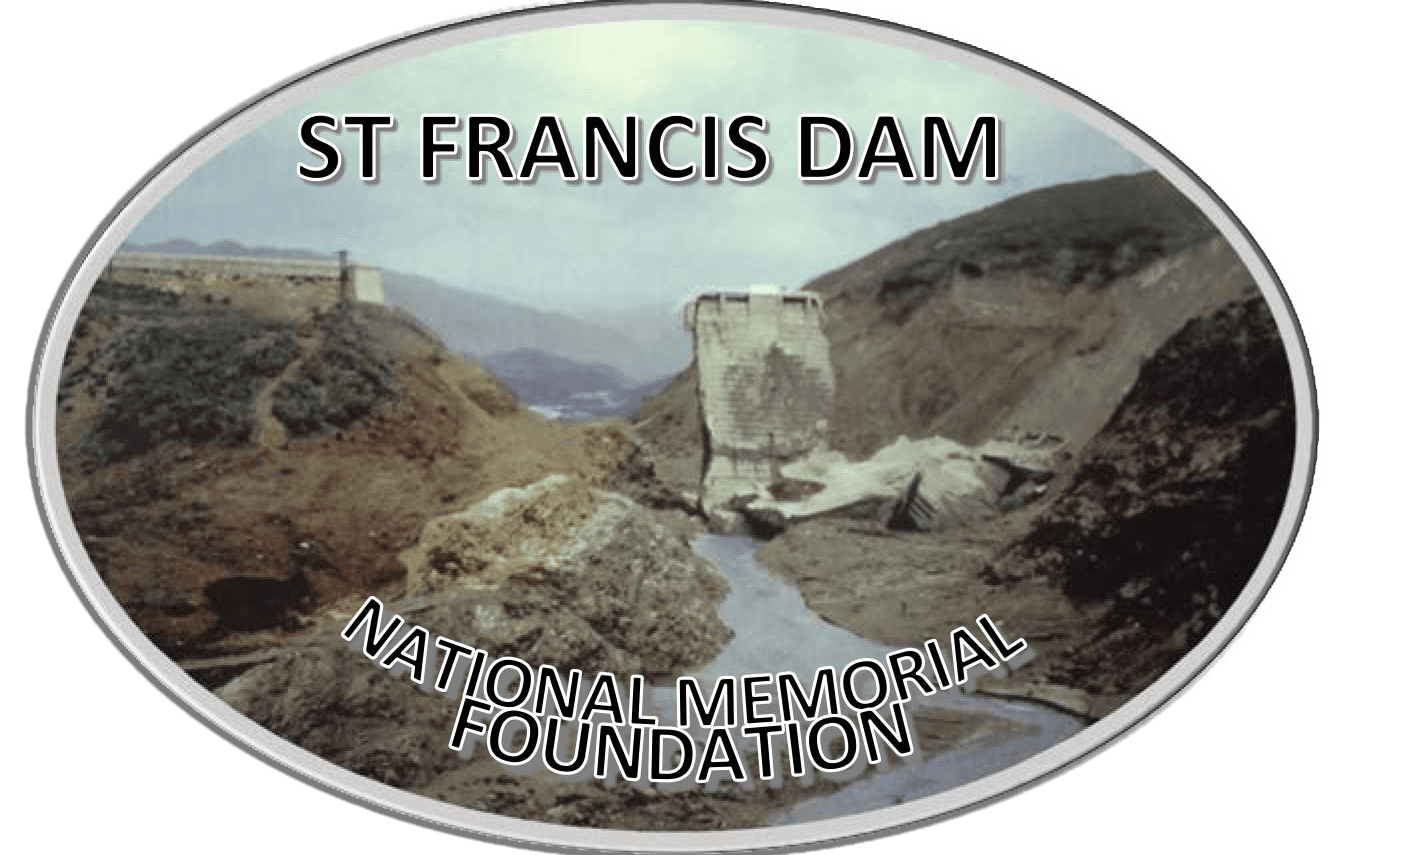 ST FRANCIS DAM NATIONAL MEMORIAL FOUNDATION